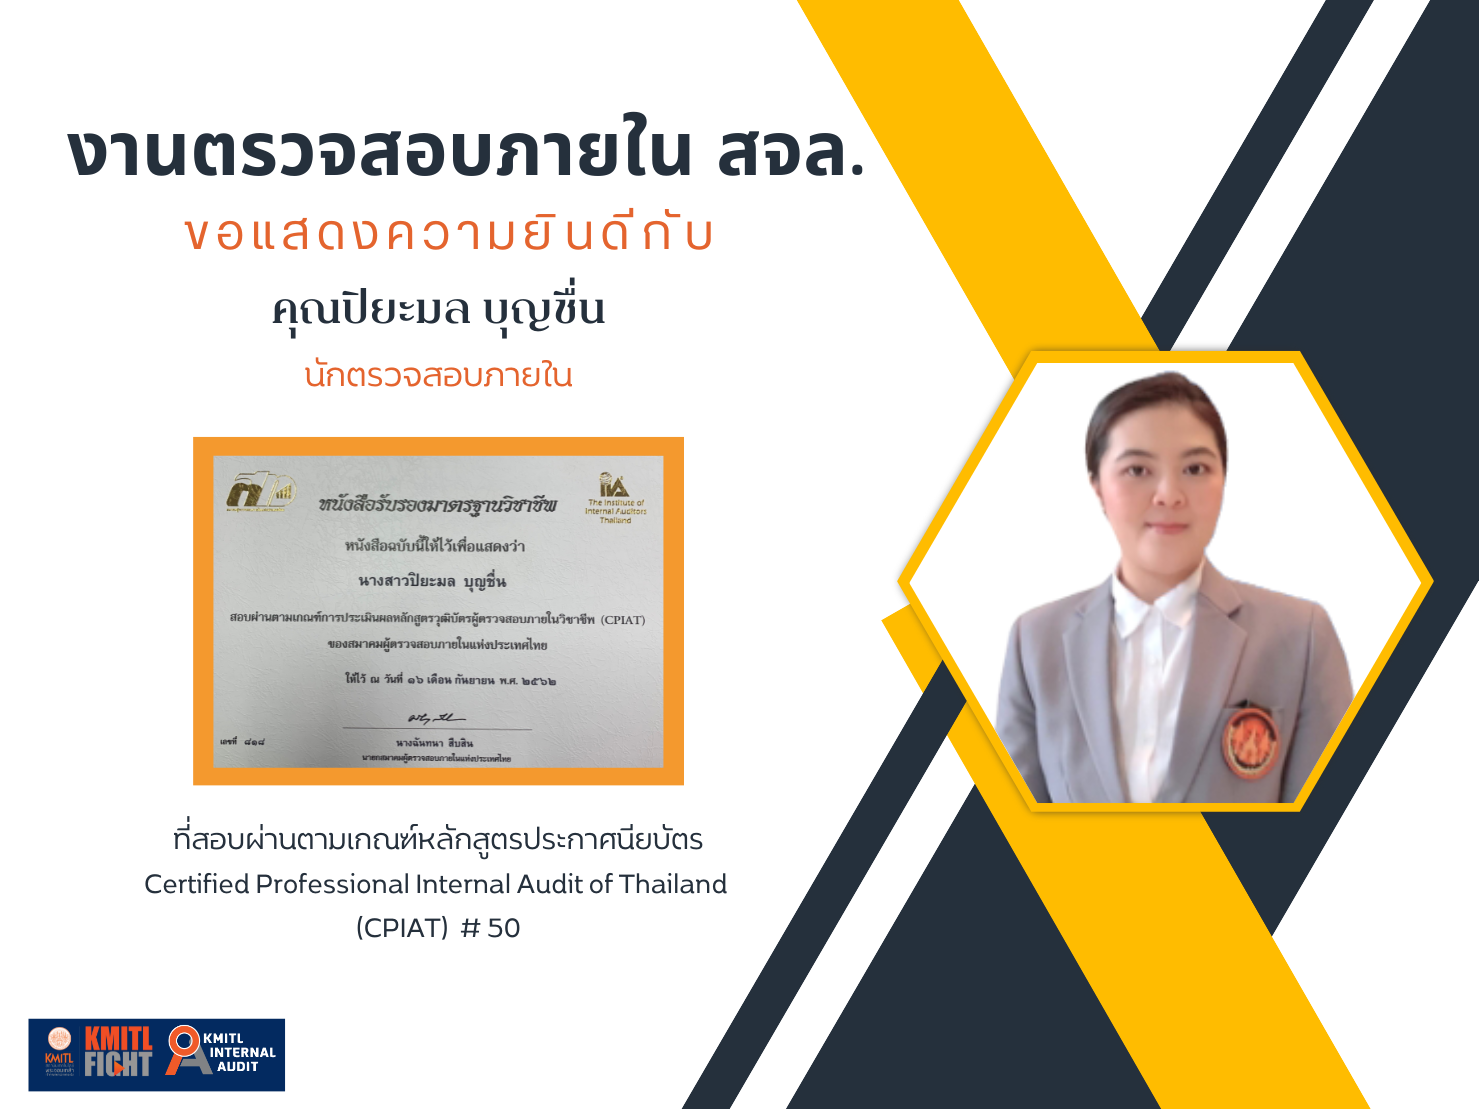 ขอแสดงความยินดีกับคุณ ปิยะมล บุญชื่น ที่สอบผ่านตามเกณฑ์หลักสูตรประกาศนียบัตร  ผู้ตรวจสอบภายในของประเทศไทย Certified Professional Internal Audit of Thailand (CPIAT) # 5